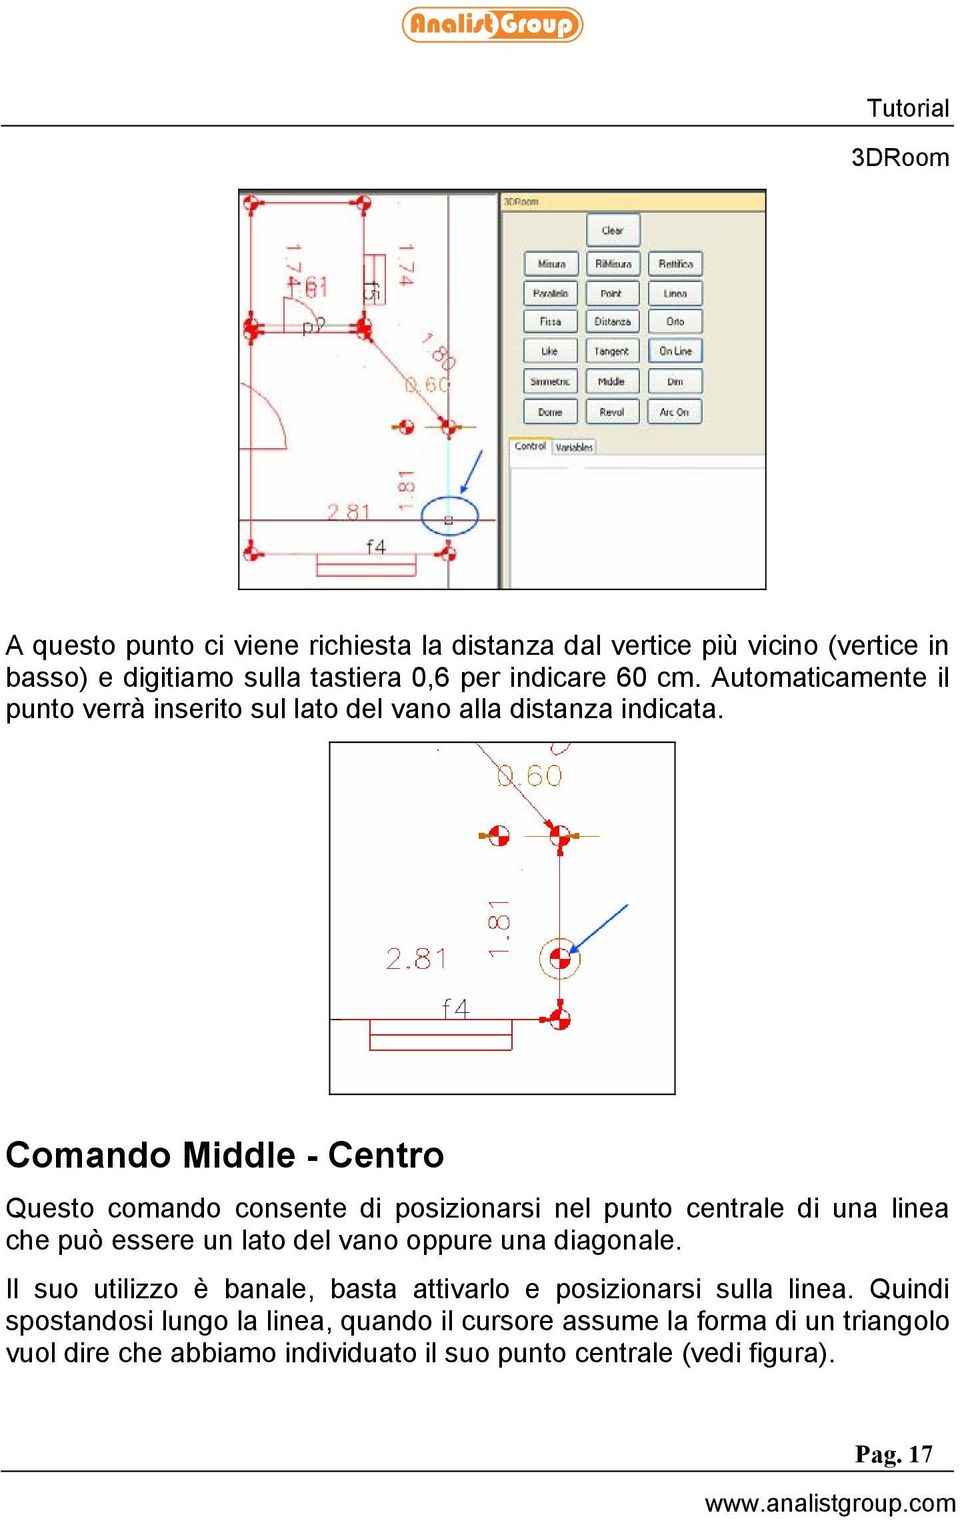 Comando Middle - Centro Questo comando consente di posizionarsi nel punto centrale di una linea che può essere un lato del vano oppure una diagonale.